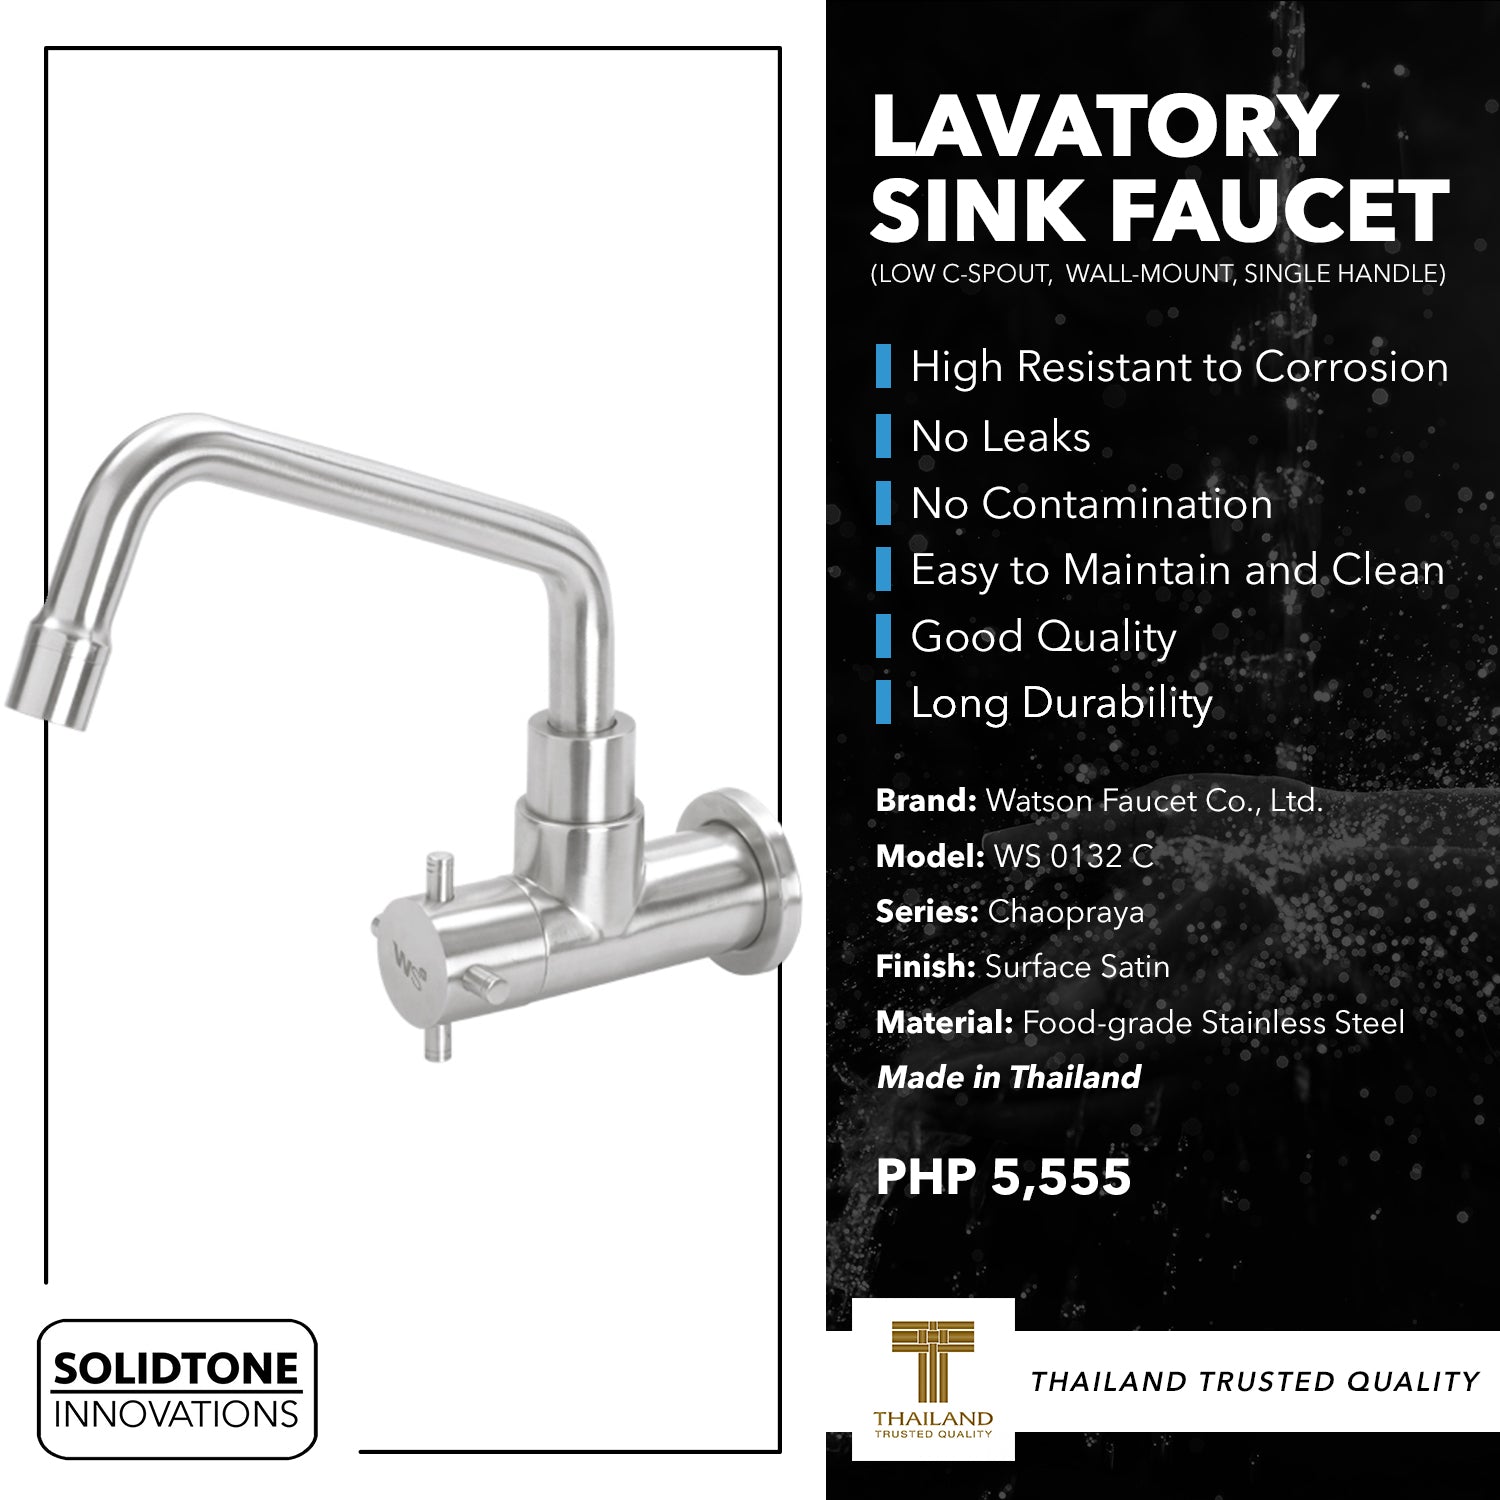 Lavatory Sink Faucet (LOW C-SPOUT, WALL MOUNT, SINGLE HANDLE)